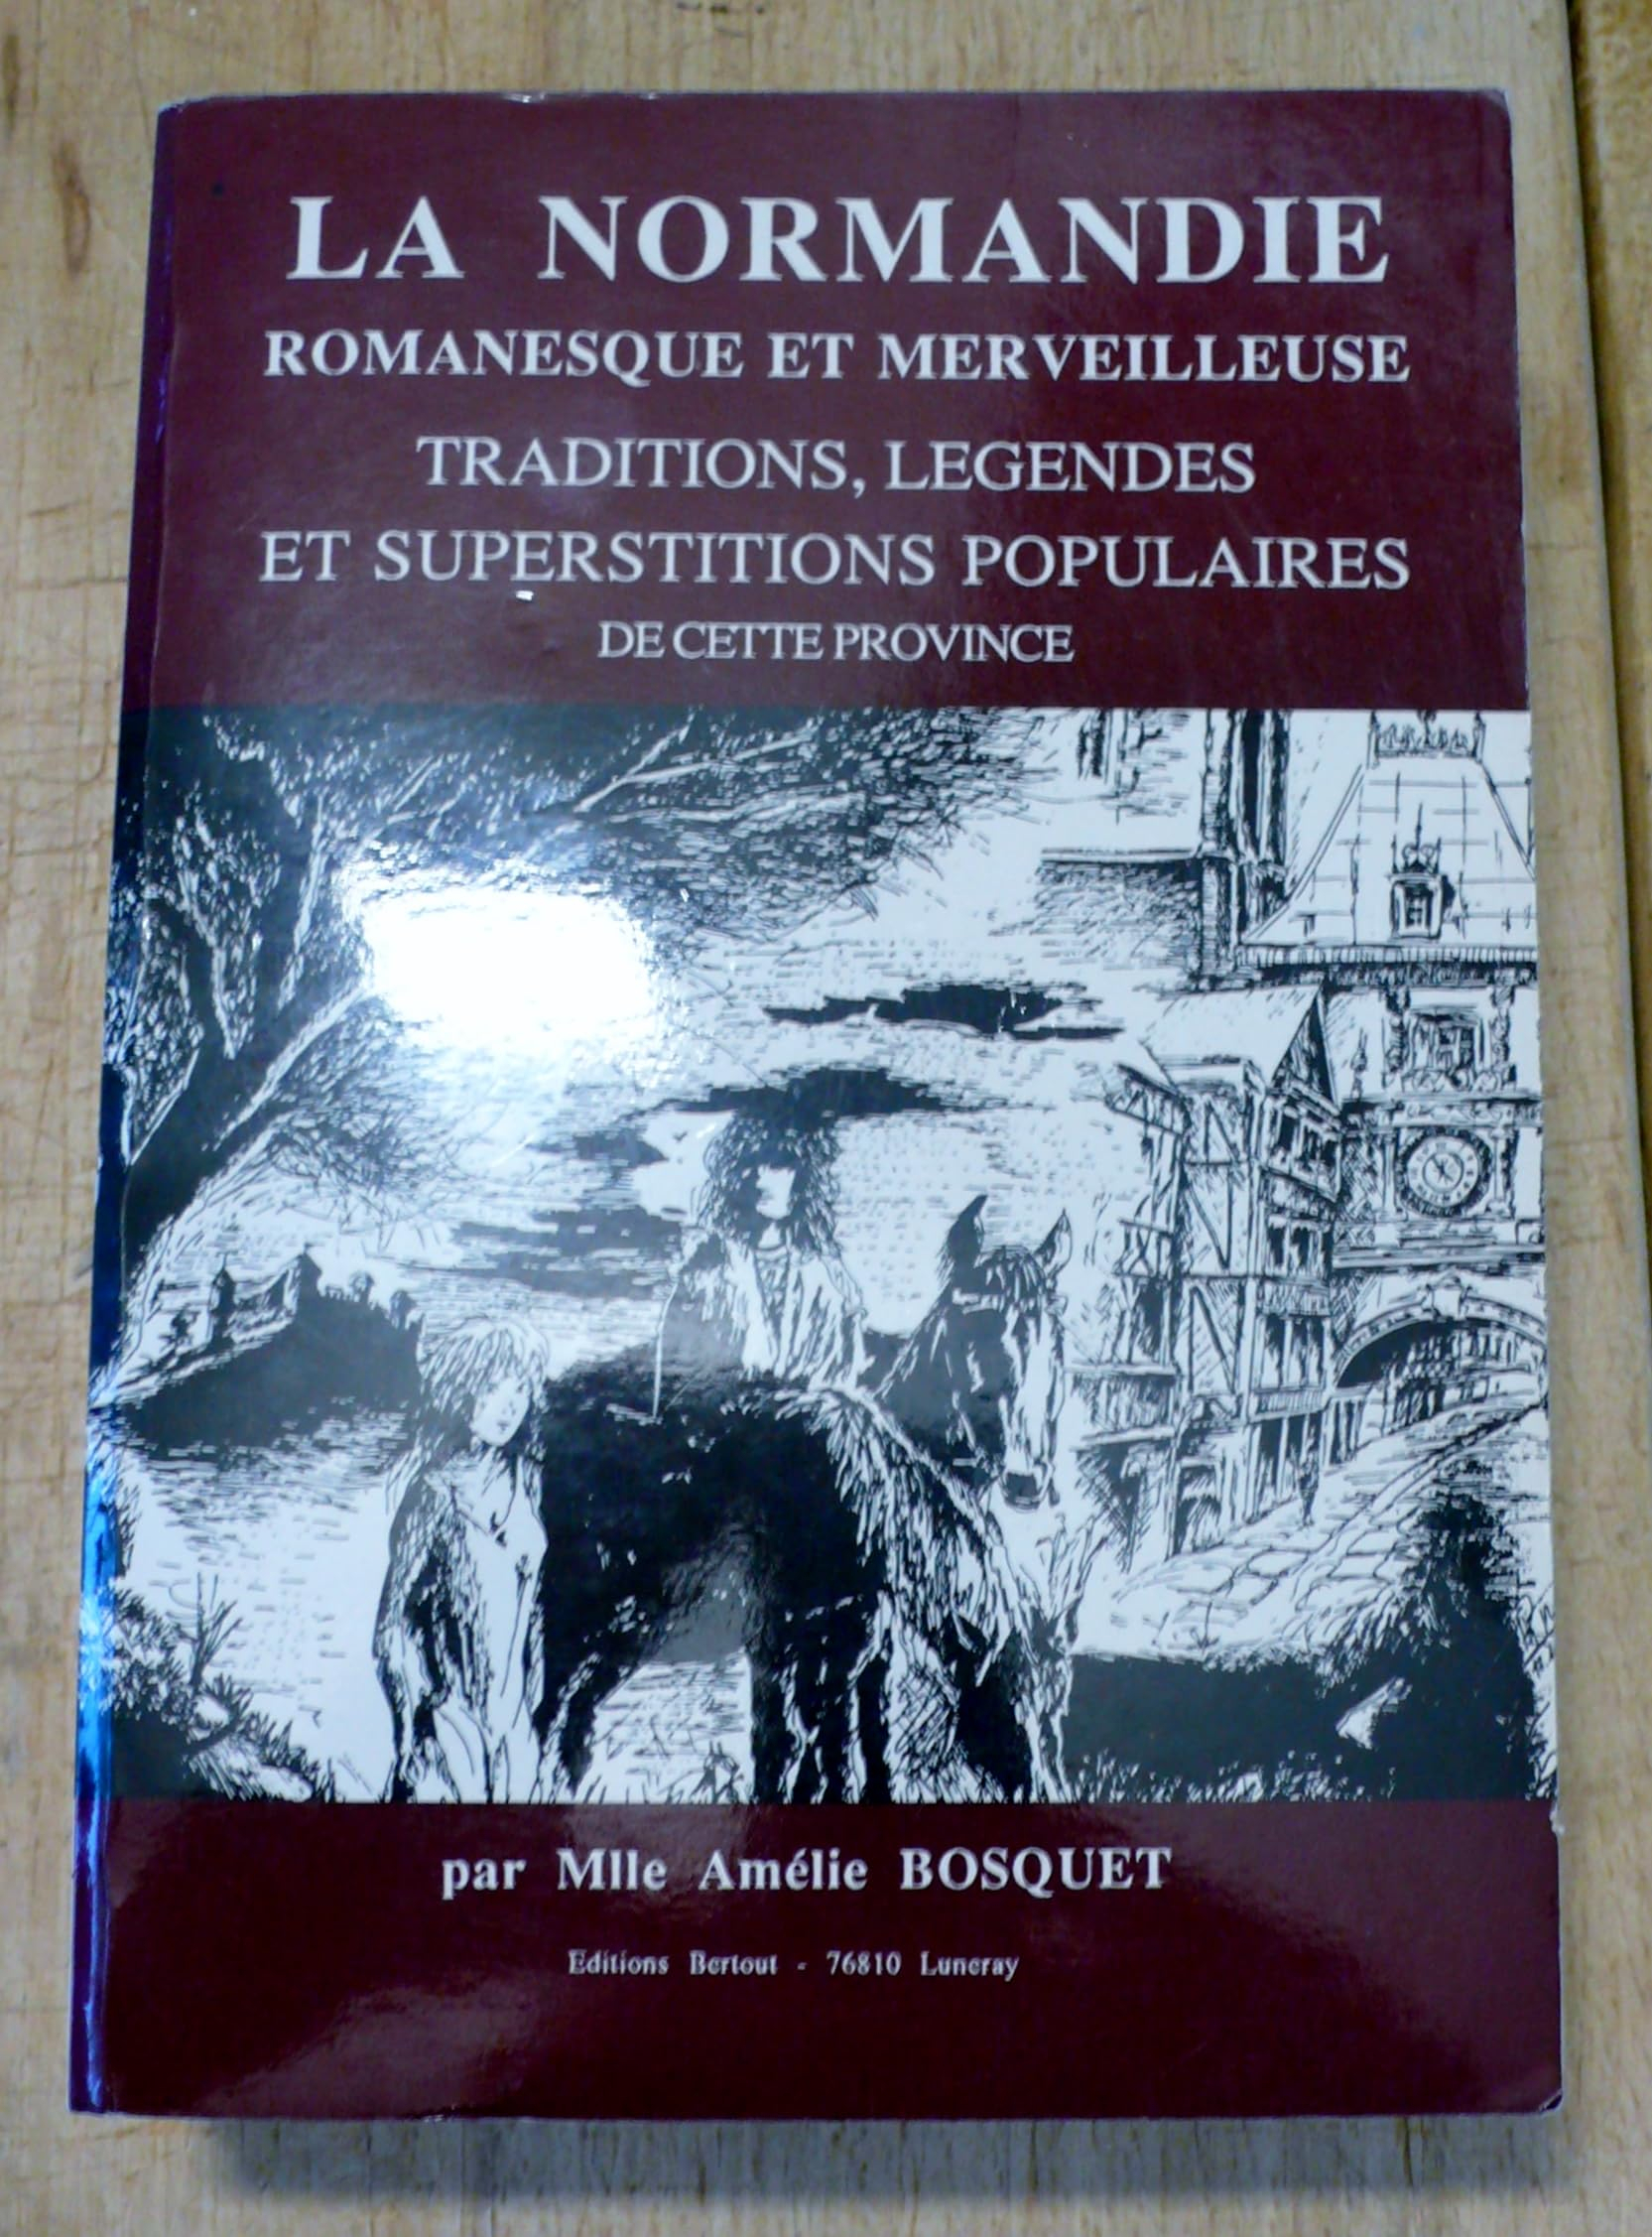 La Normandie Romanesque et Merveilleuse , Traditions, Legendes, et superstitions populaires